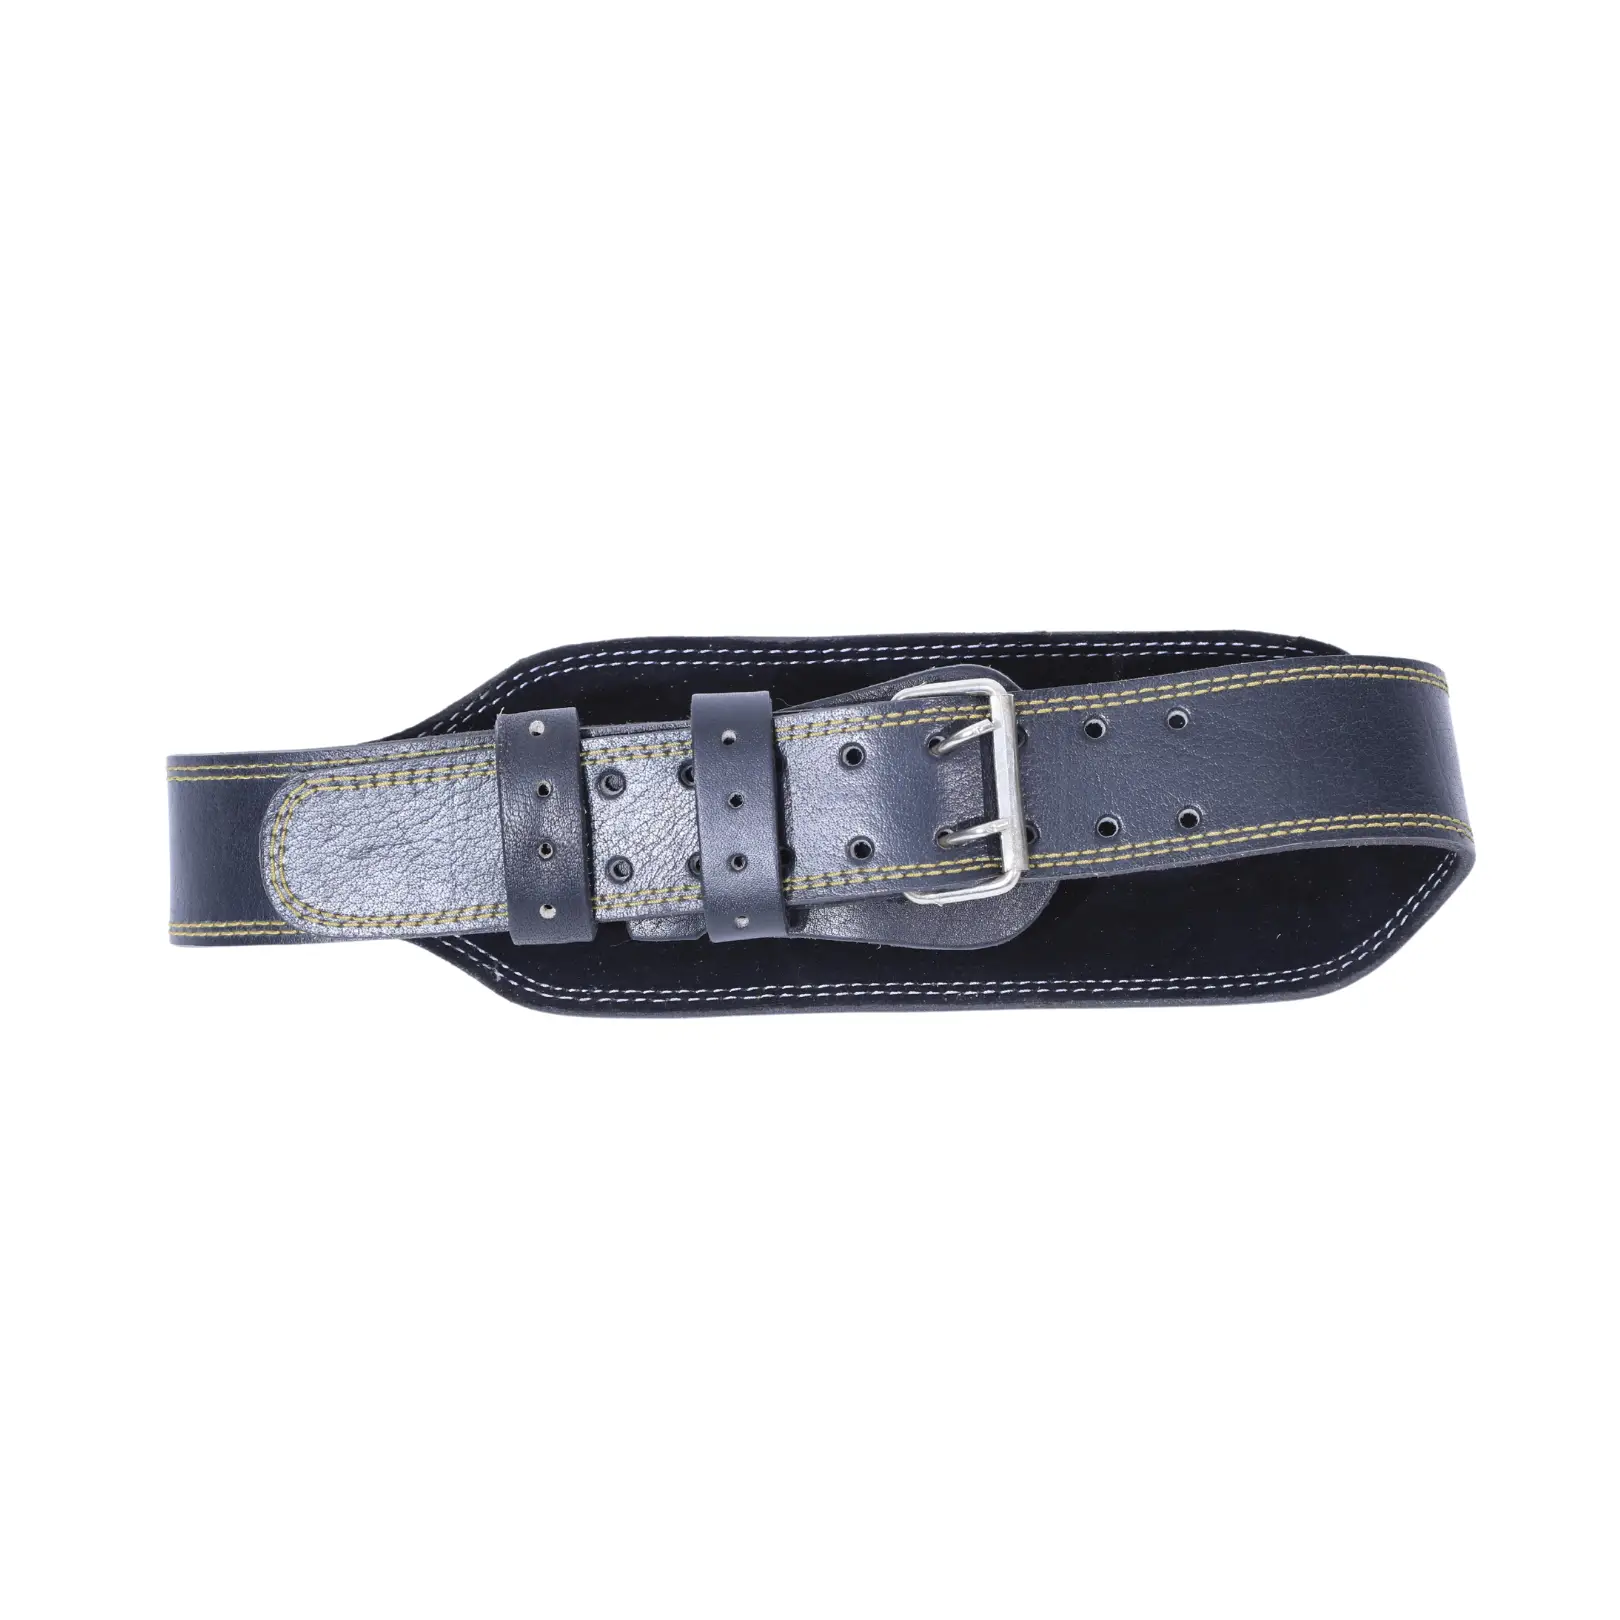 Nutrascia Gym Leather Back Belt